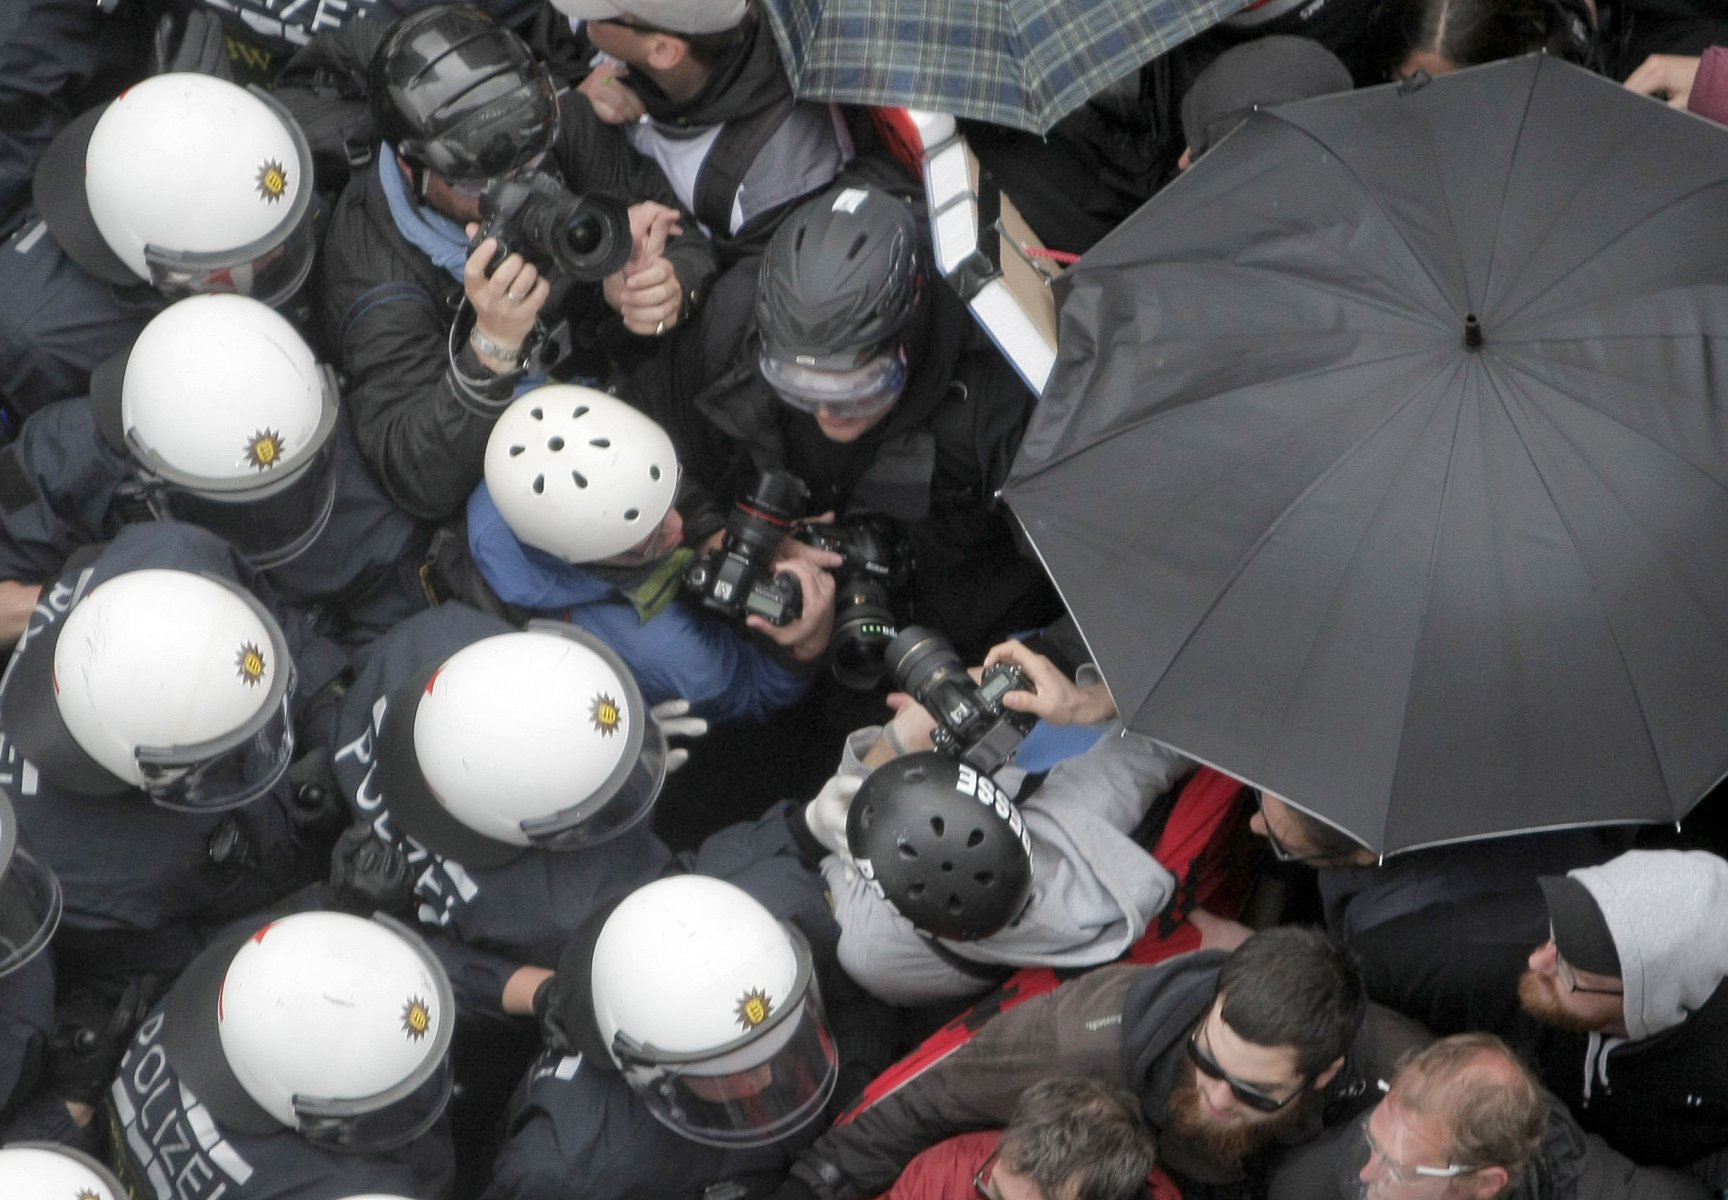 Bei der gewaltsamen Räumung eines Polizeikessels geraten die Fotografen am 1. Juni 2013 in Frankfurt in Bedrängnis. Politik und Gewerkschaften kritisieren noch Wochen danach die Gewalttätigkeit der Polizei. Mehrere Journalisten werden durch die Beamten gezielt angegangen und verletzt.